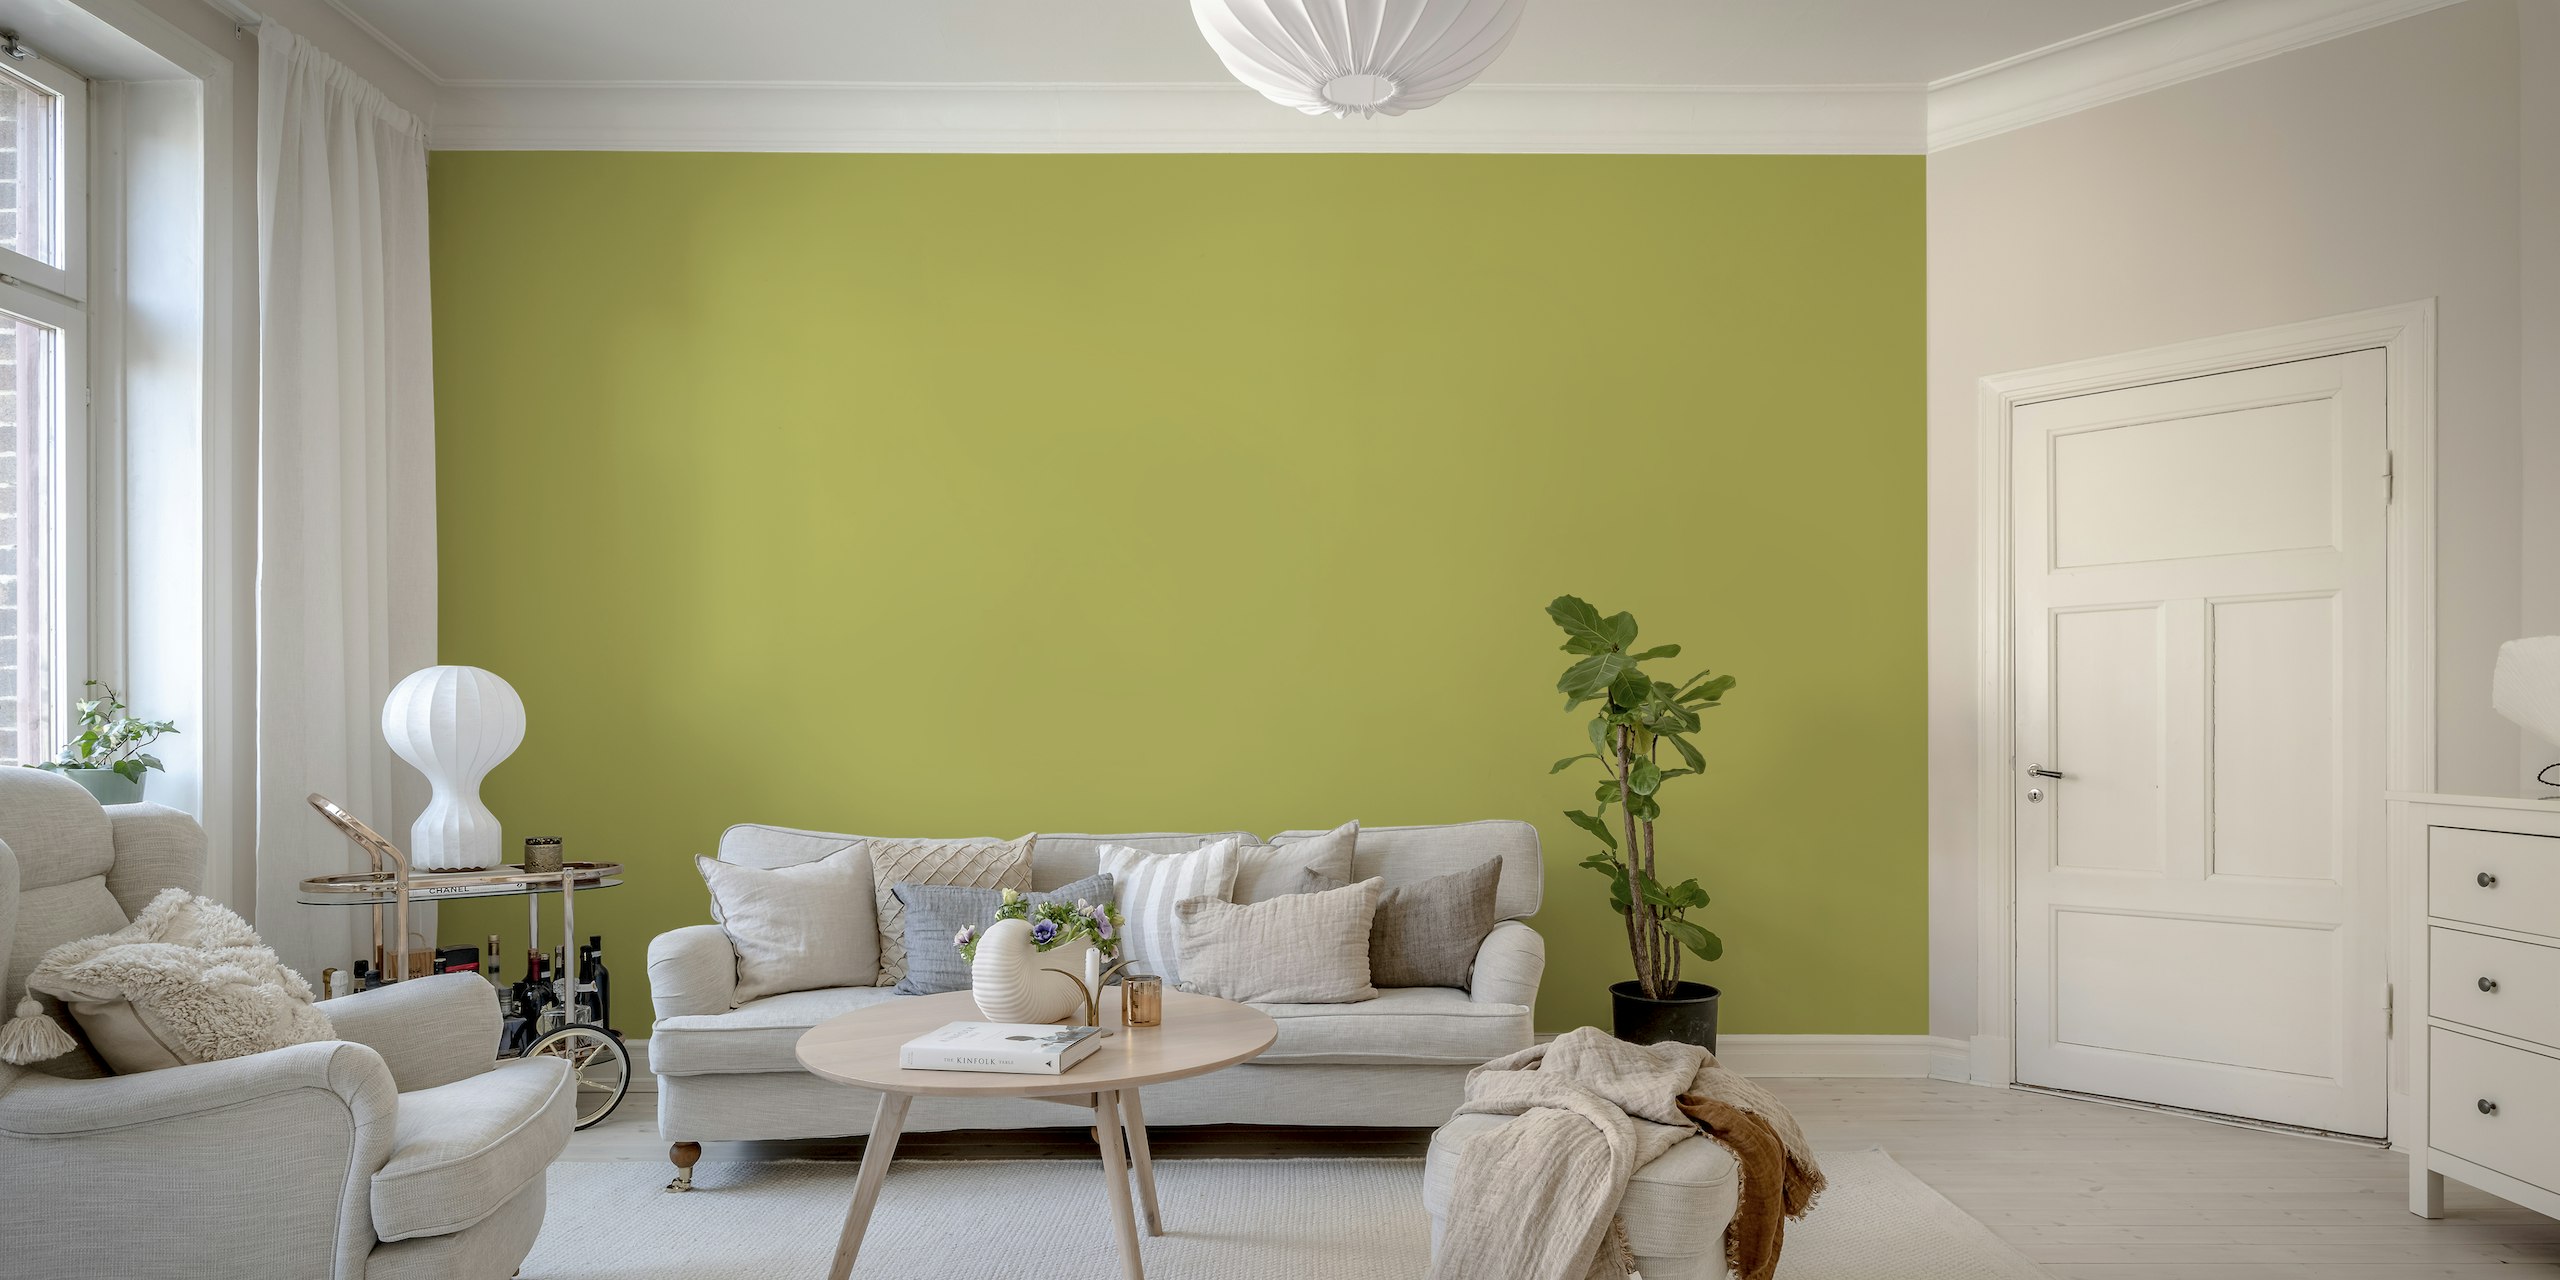 Fotomural vinílico de parede de cor sólida verde oliva exalando uma vibração tranquila e sofisticada.